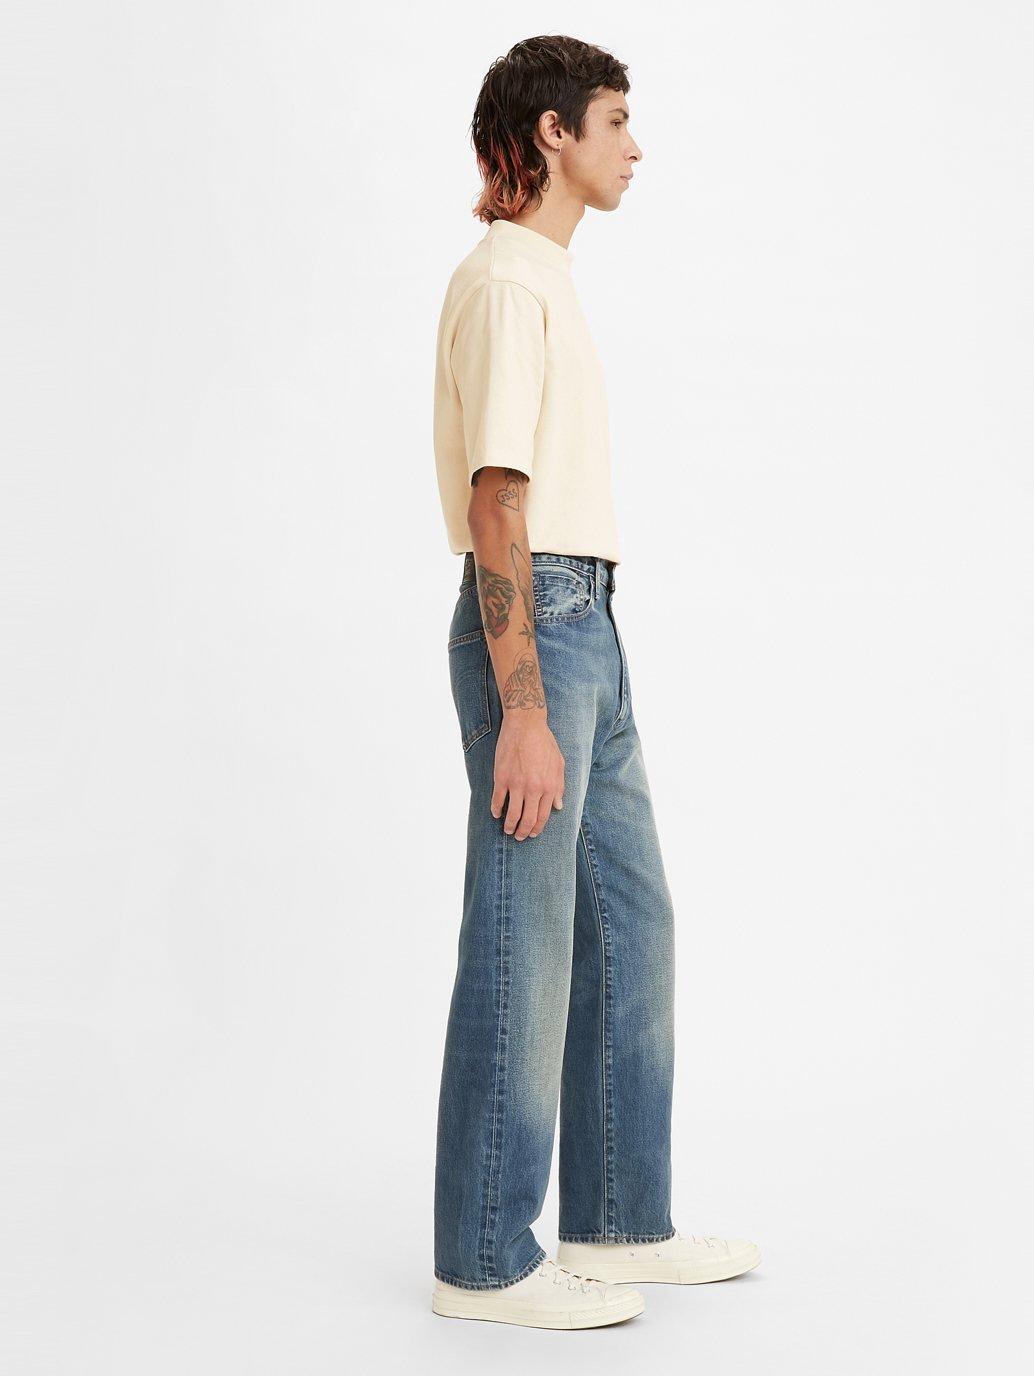 Descubrir 60+ imagen levi’s men’s high rise jeans